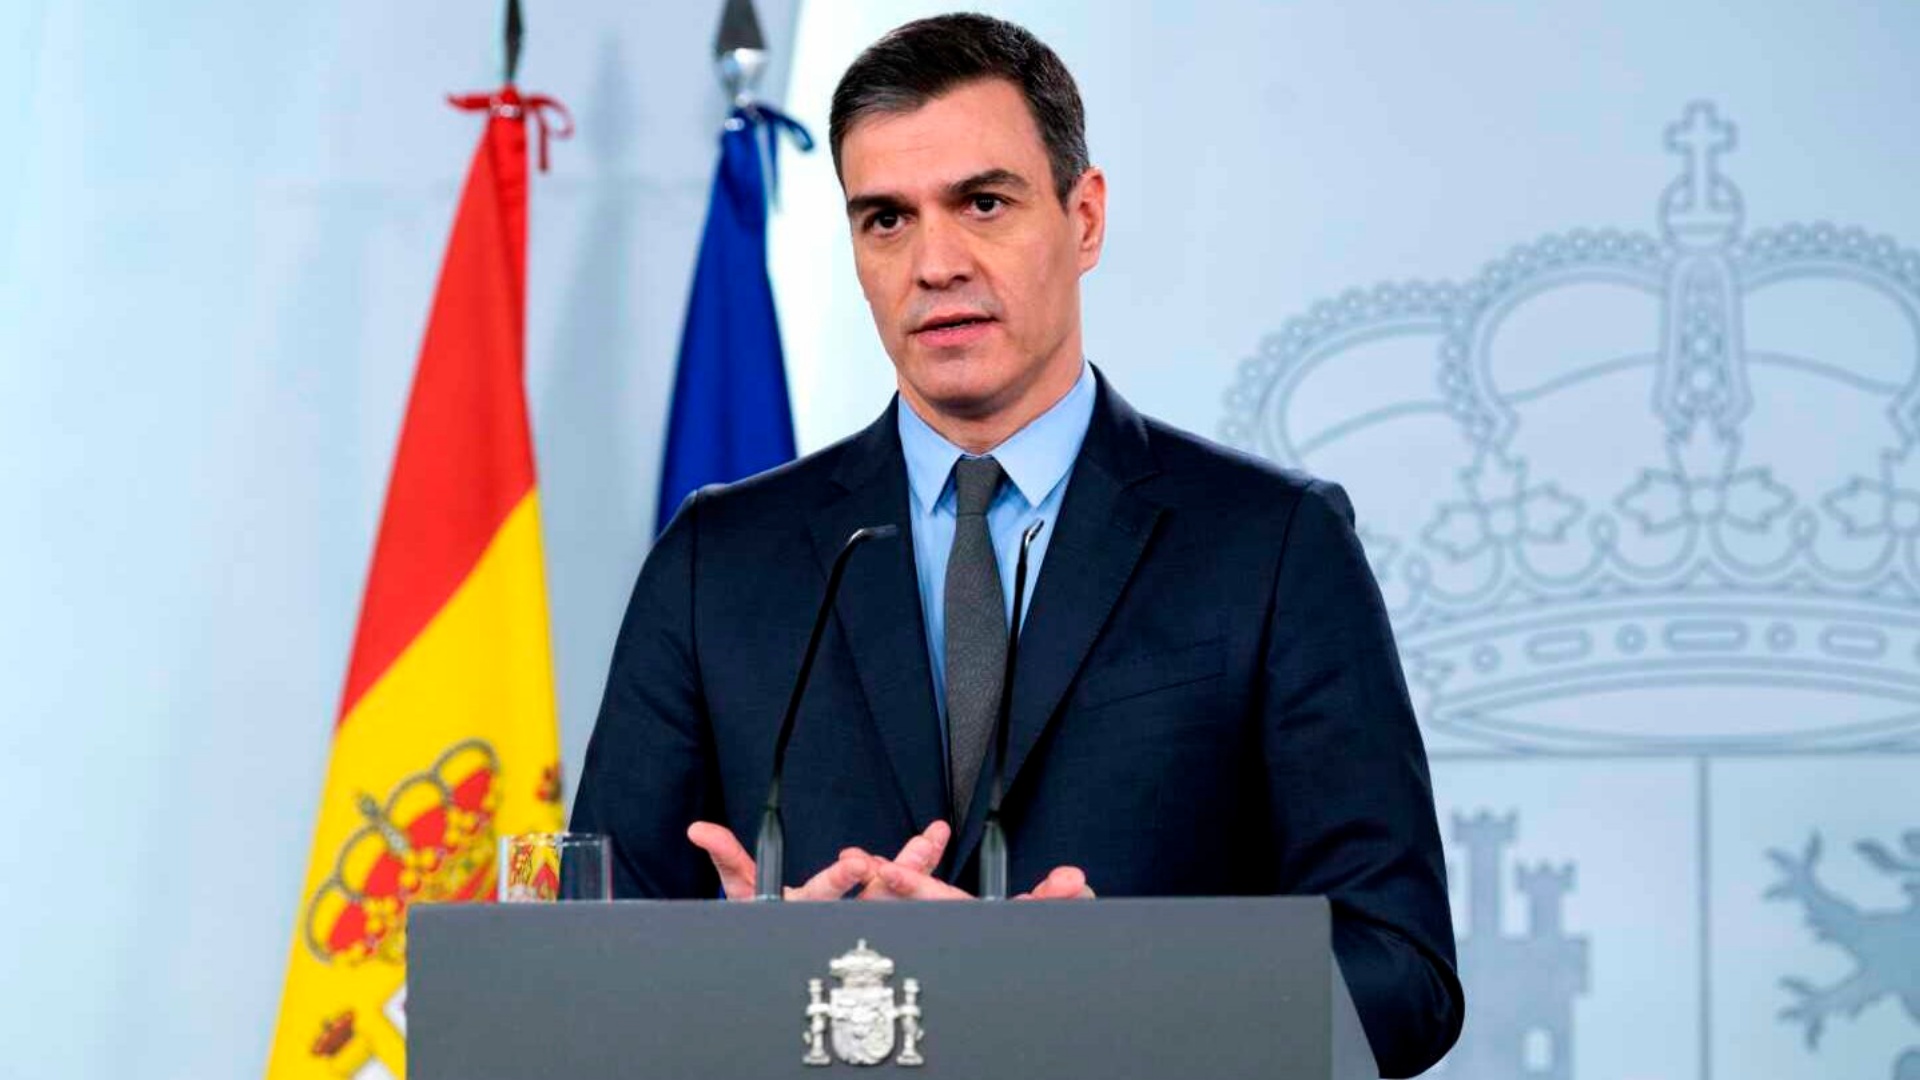 Bashkëshortja e tij nën hetim për korrupsion, kryeministri i Spanjës shqyrton mundësinë e dorëheqjes!